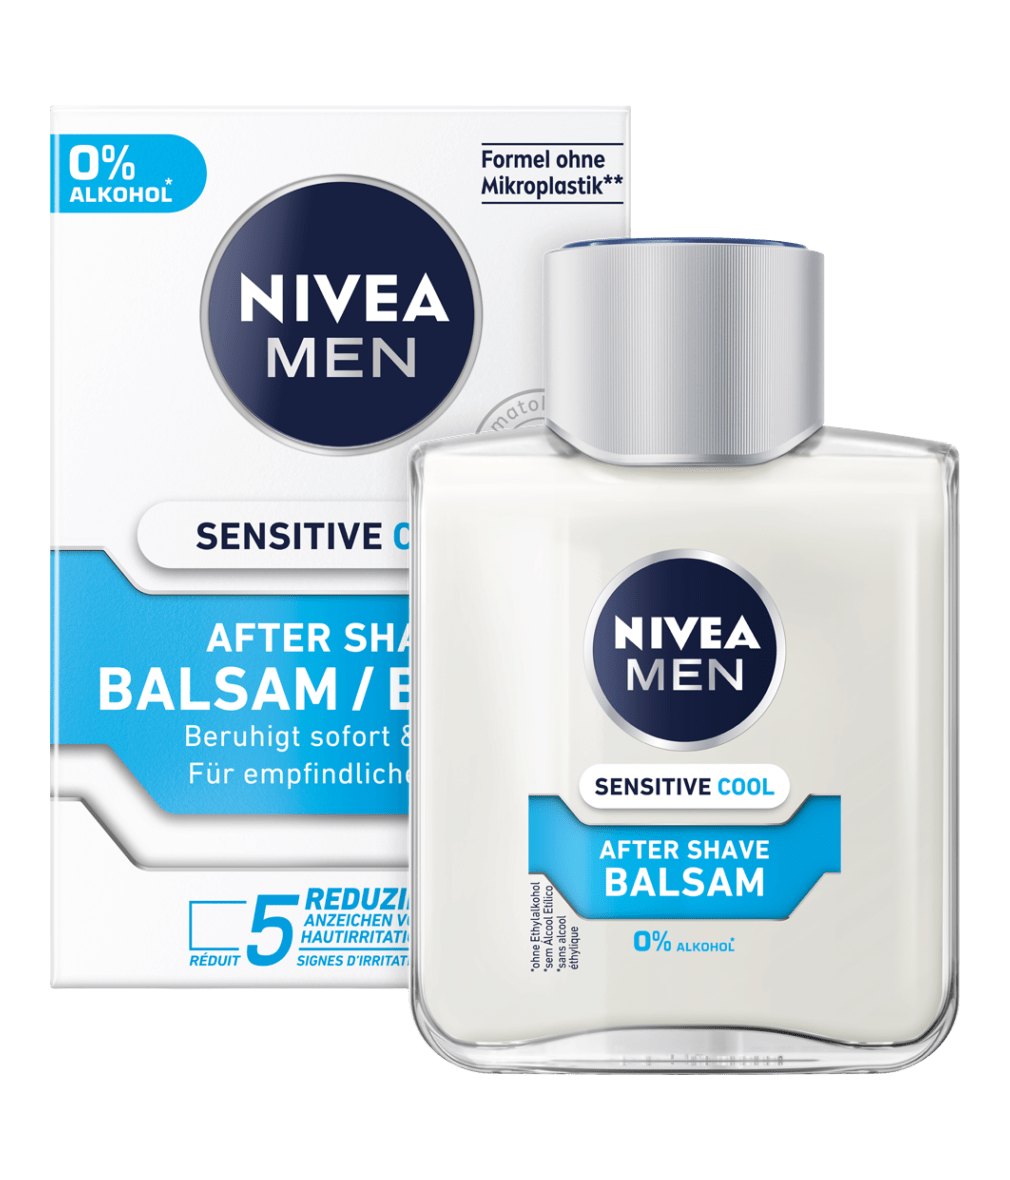 Bain de vapeur: Une peau nette étape par étape– NIVEA - NIVEA Suisse